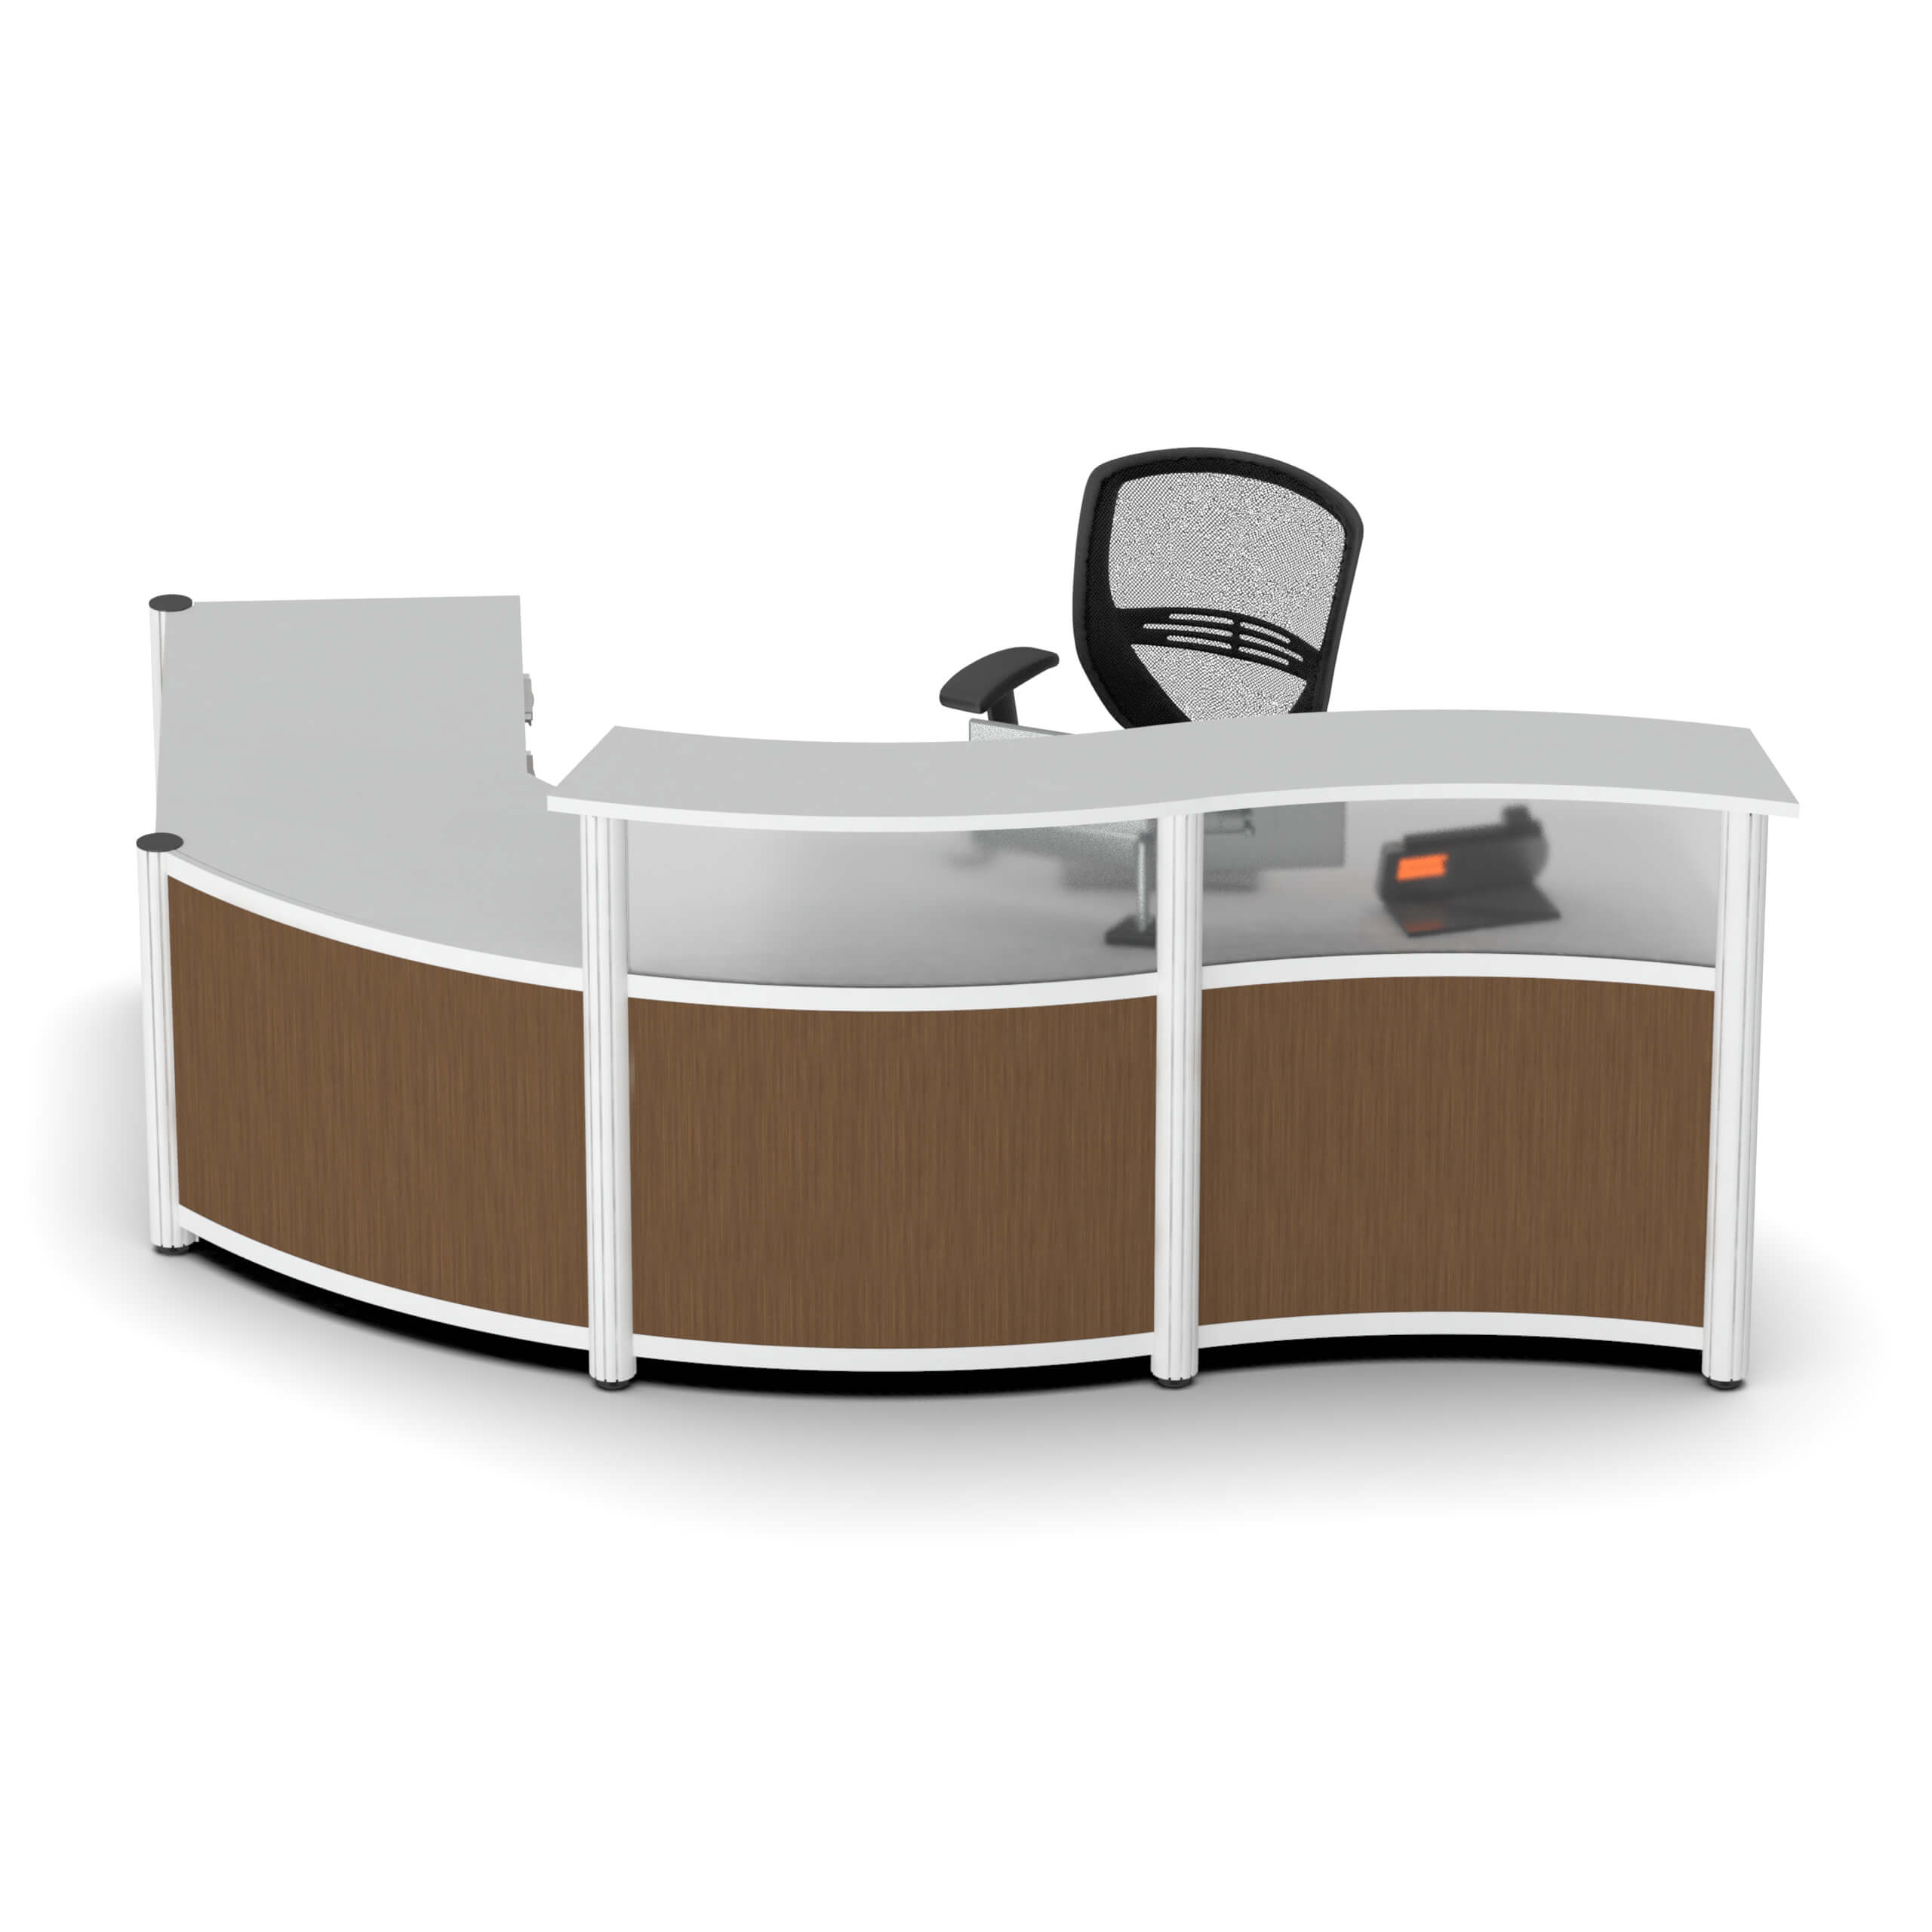 Arcwave curved reception desk cub PBR001 gt